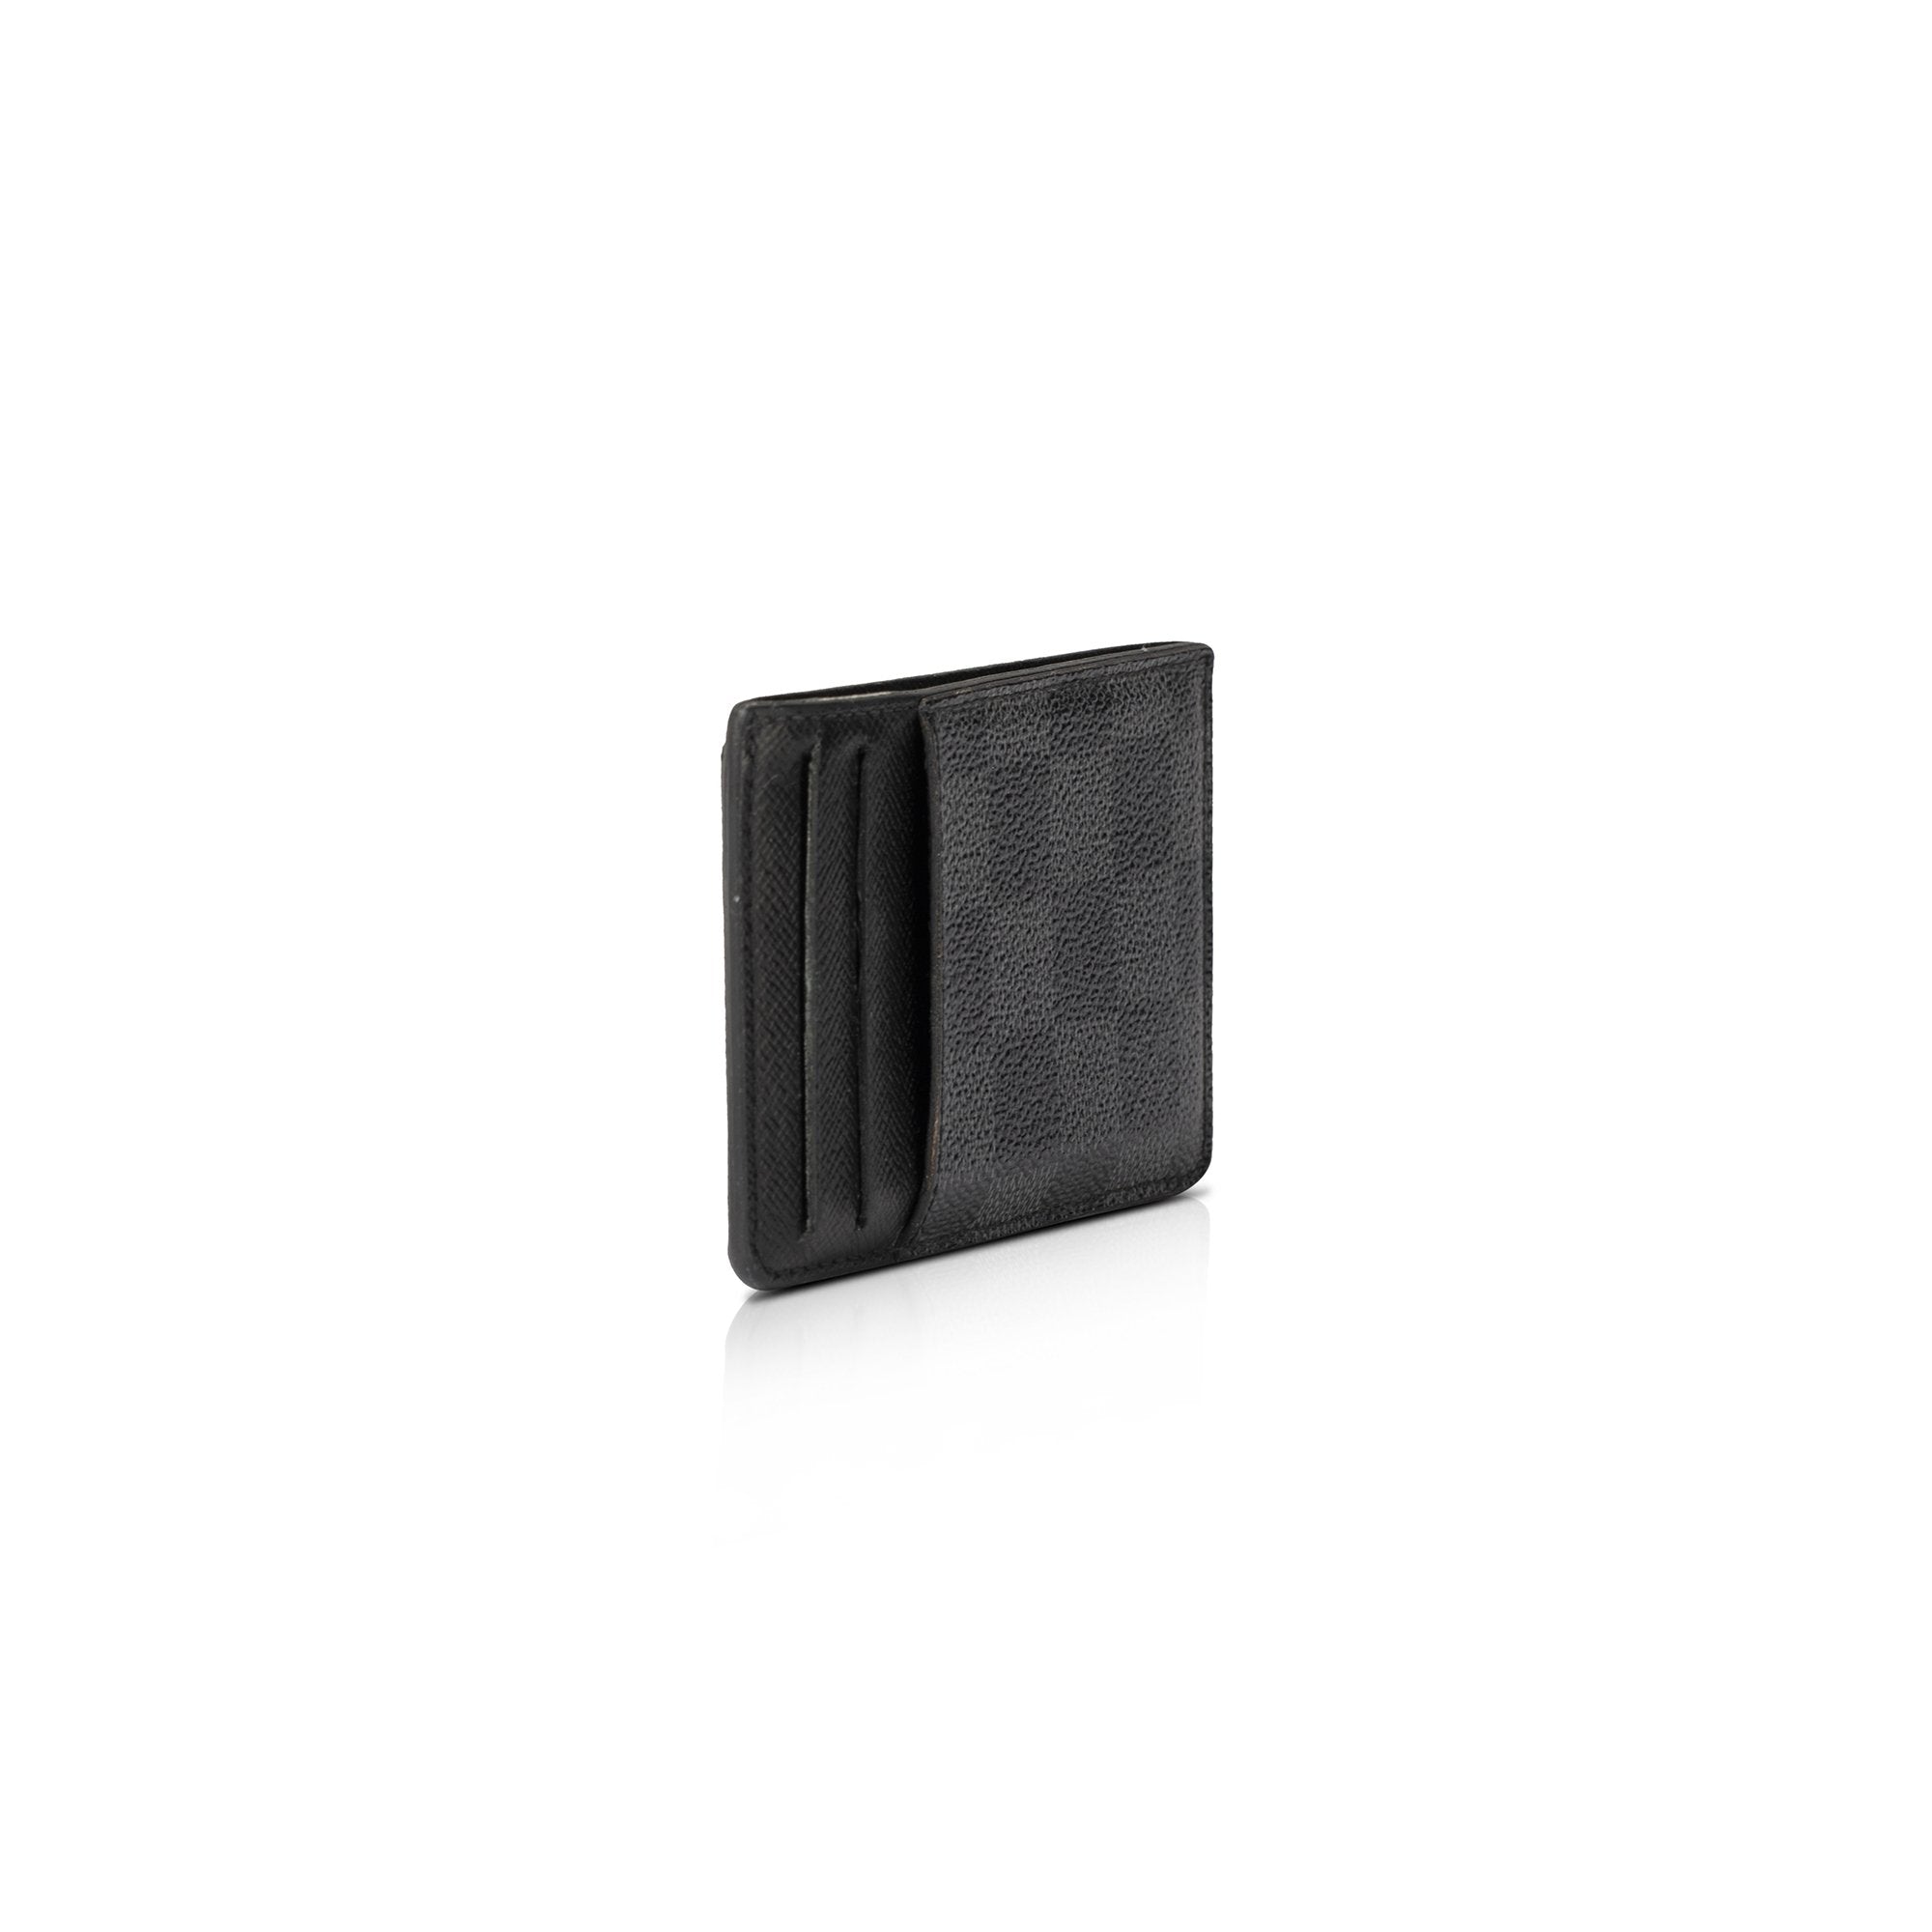 Louis Vuitton Damier Neo Porte Cartes Cardholder - Black Wallets